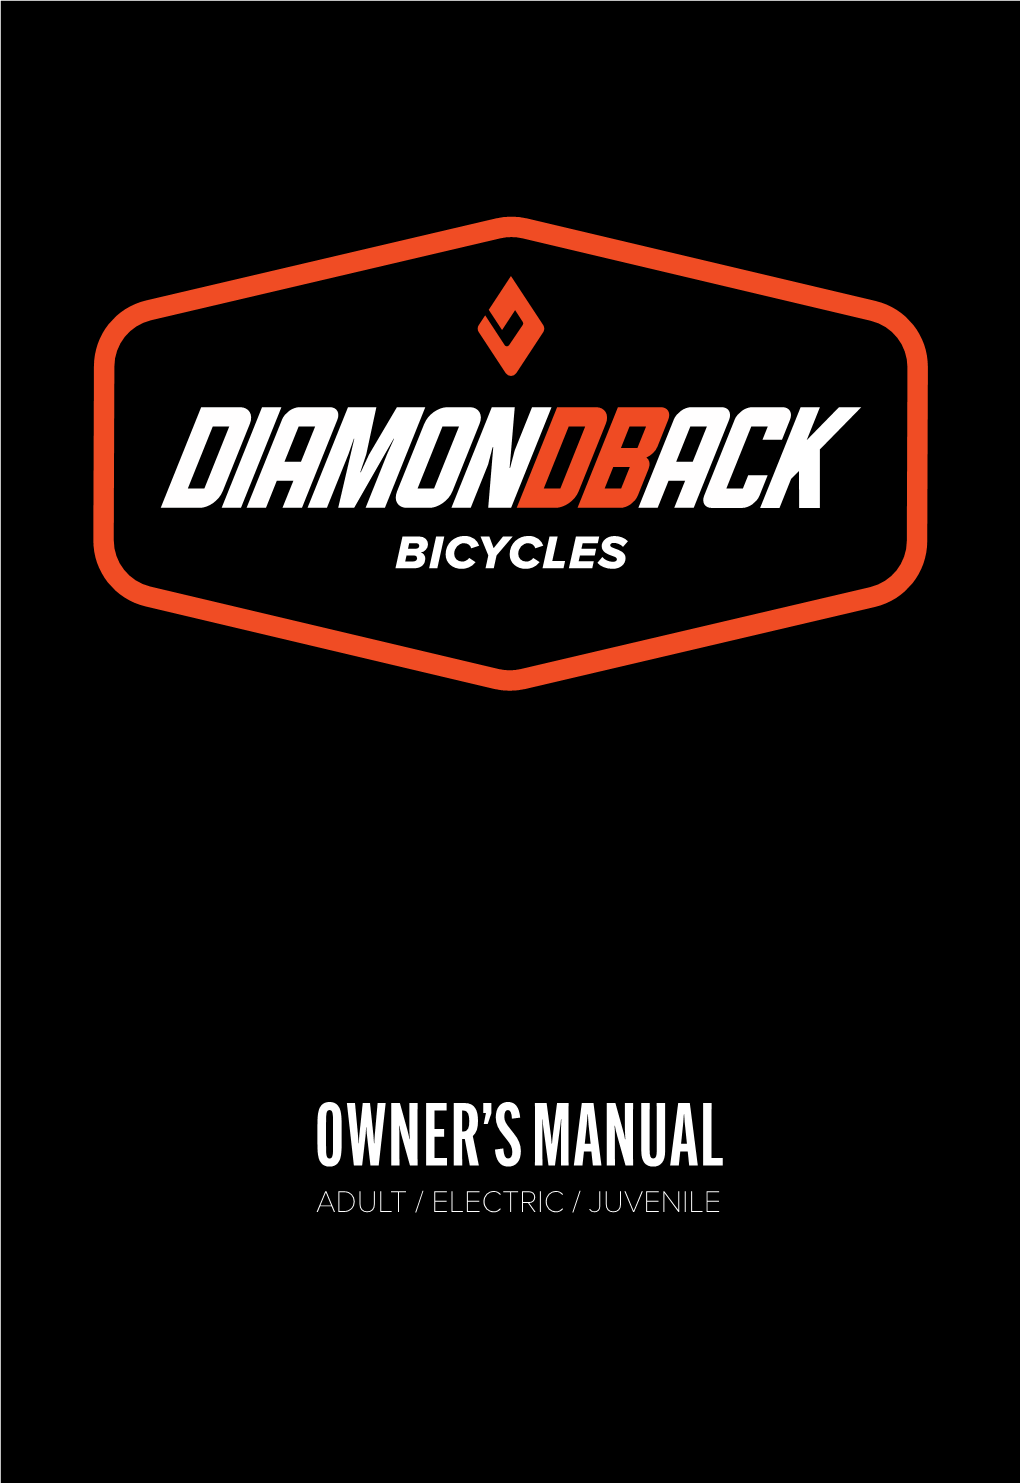 Owner's Manual